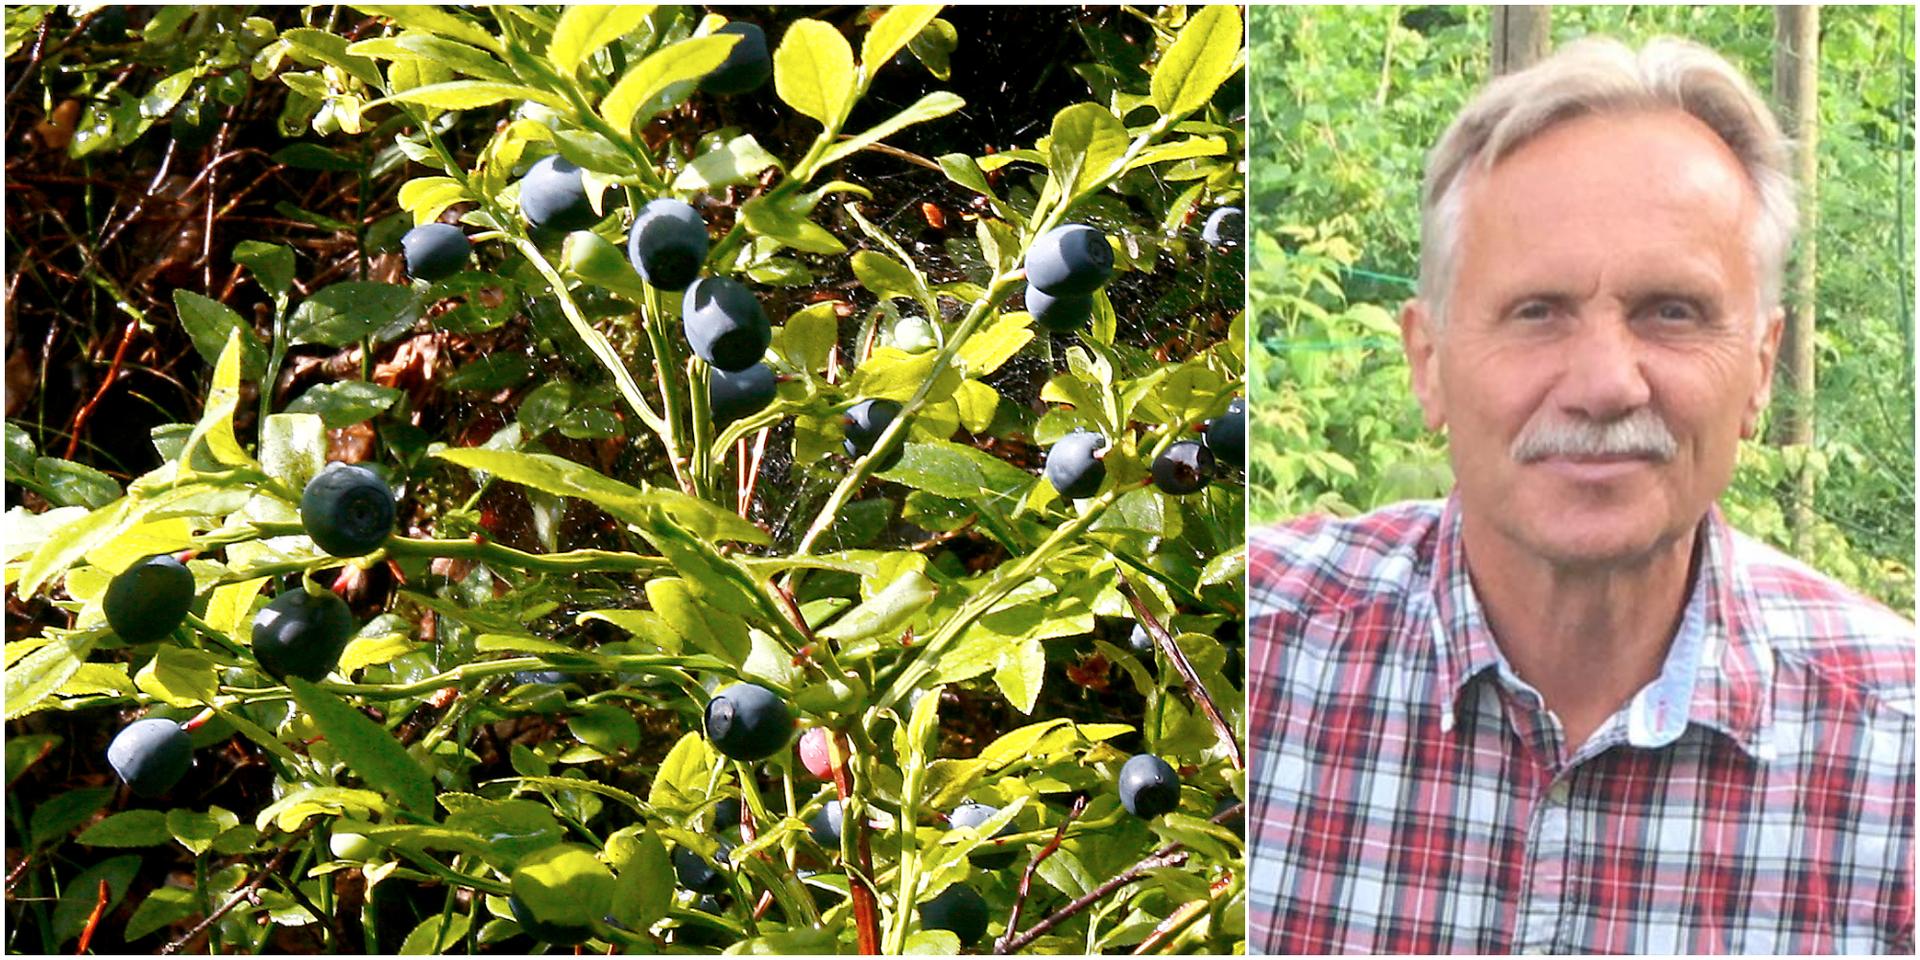 Antalet blåbär i Kungsbackas skogar har ökat väldigt mycket sen förra året.